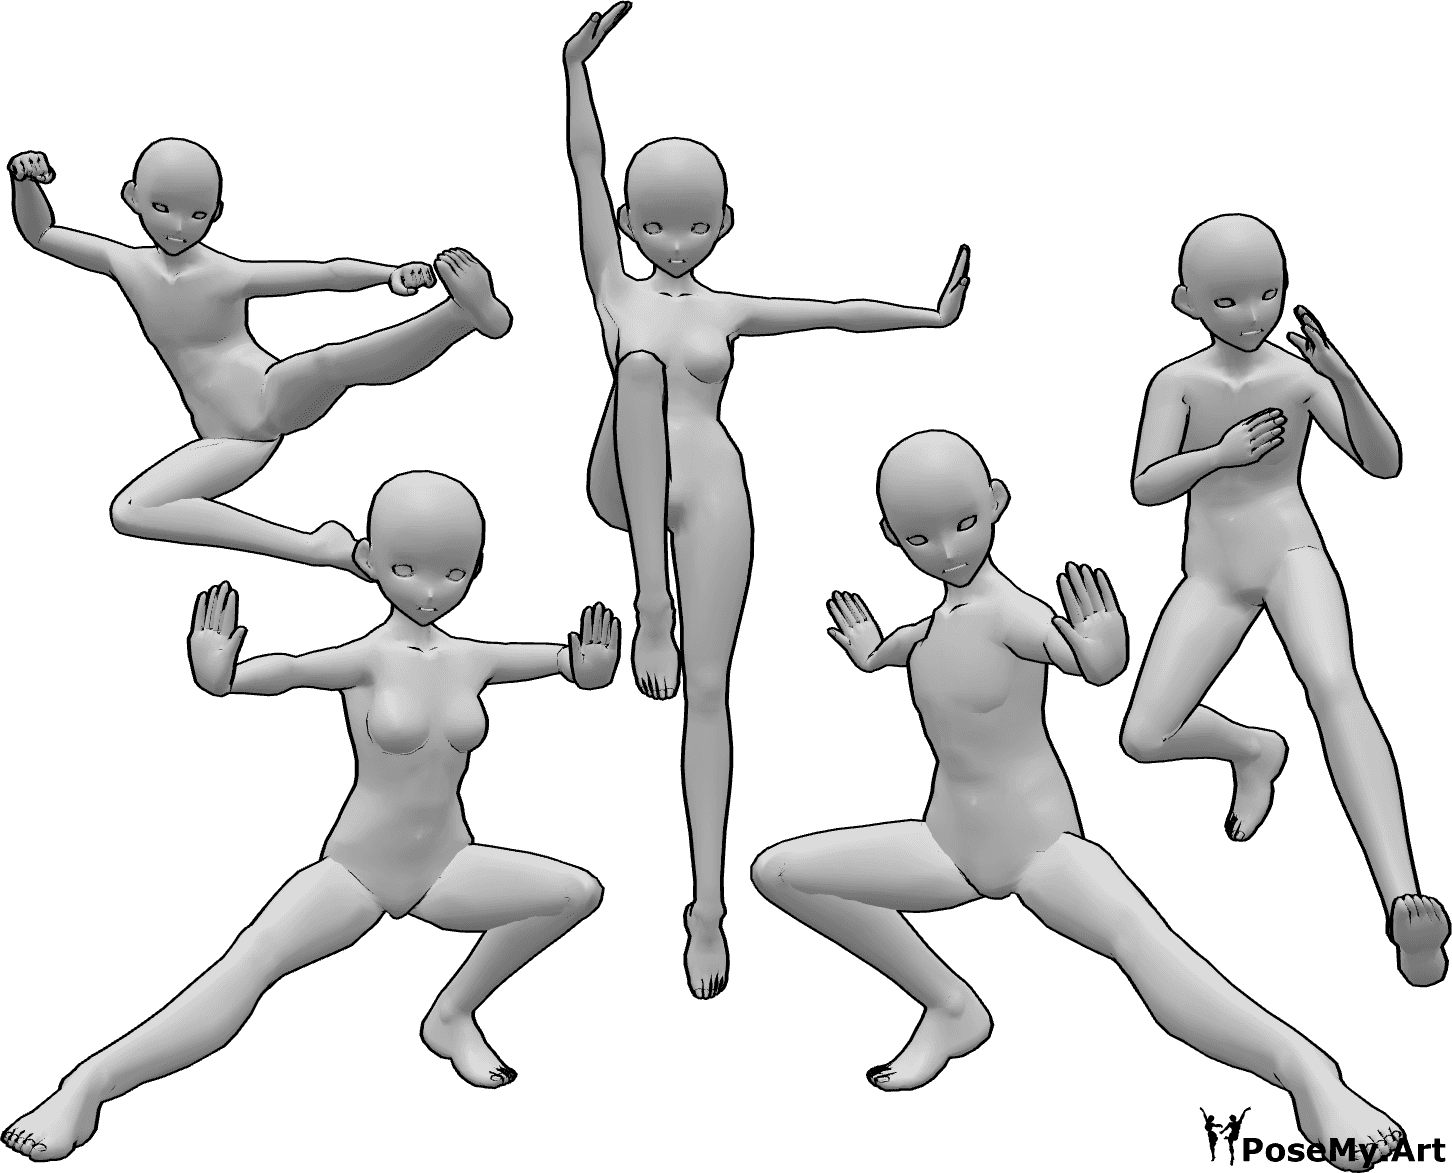 Riferimento alle pose- Anime kung fu posa di gruppo - Gruppo di cinque anime femmina e maschio combattenti di kung fu sono in posa, anime combattenti di kung fu posa